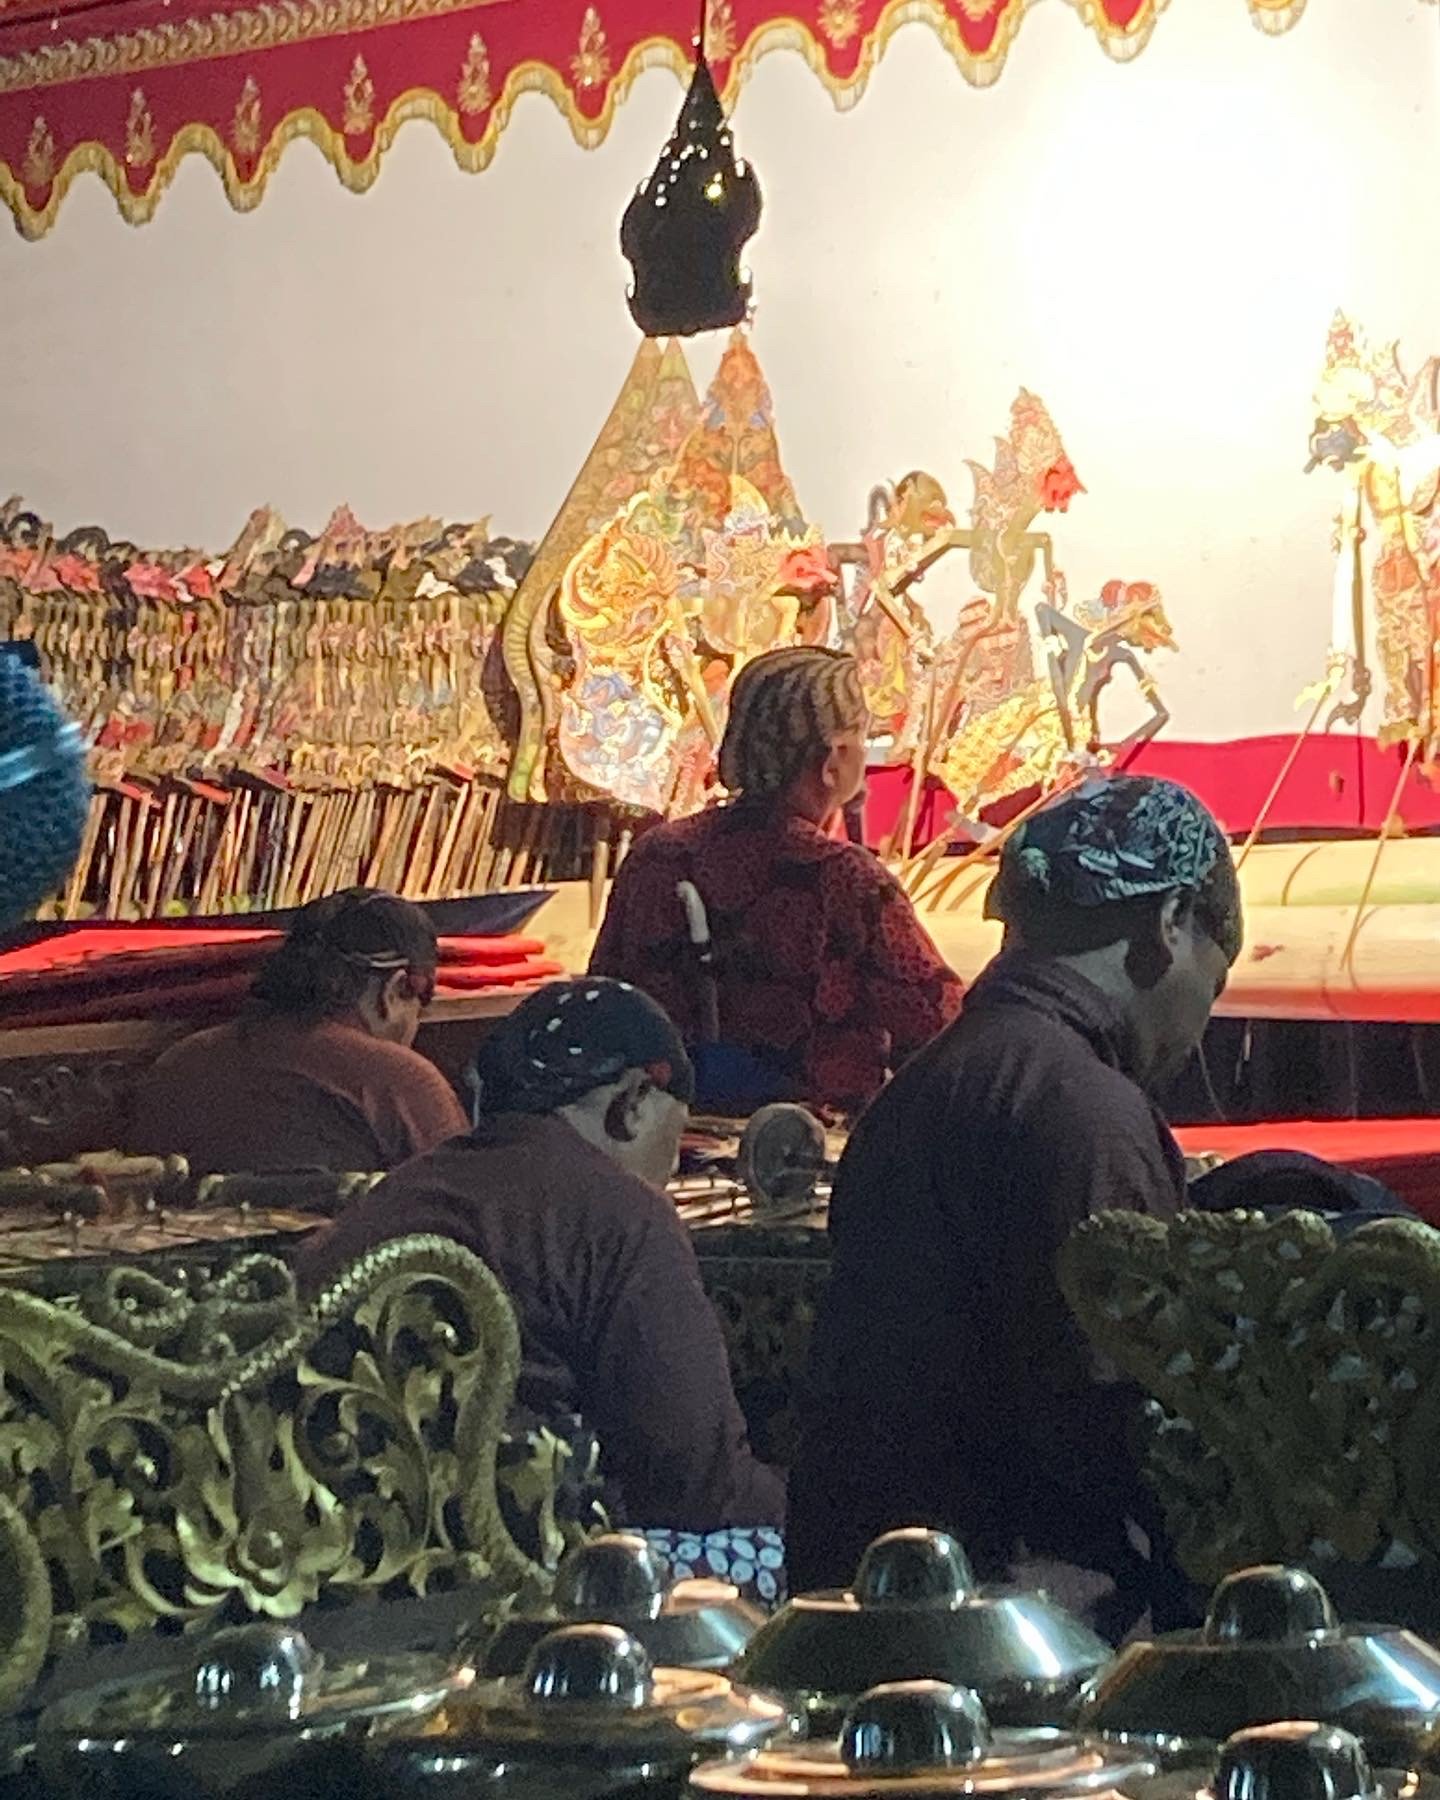 Behind the dalang and gamelan